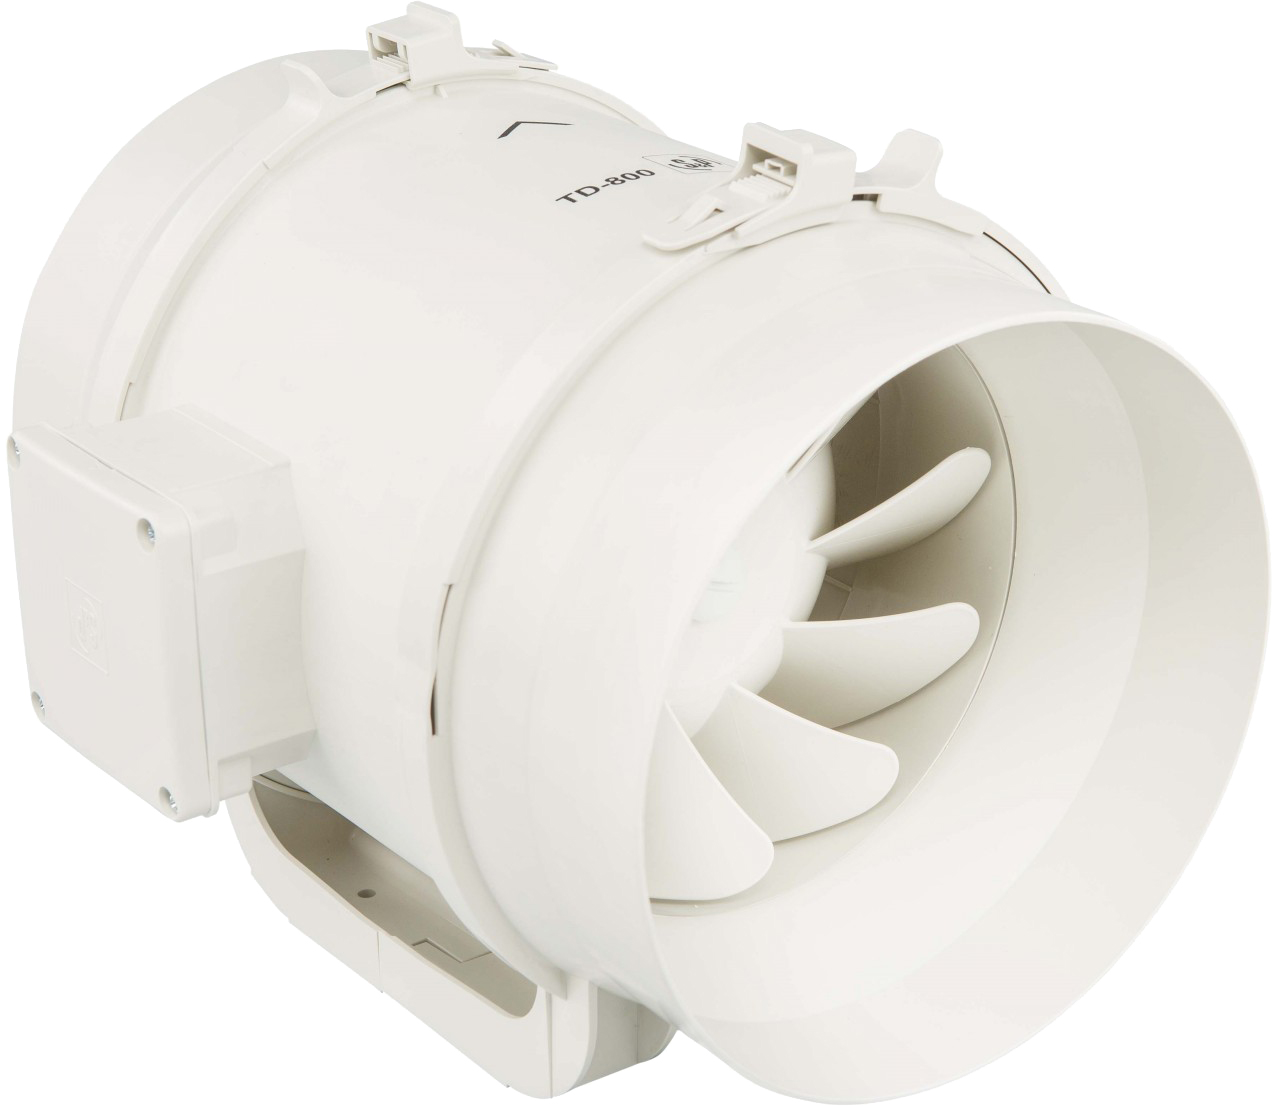 Канальный вентилятор для кухни 150 мм Soler&Palau TD-500/150 3V N8